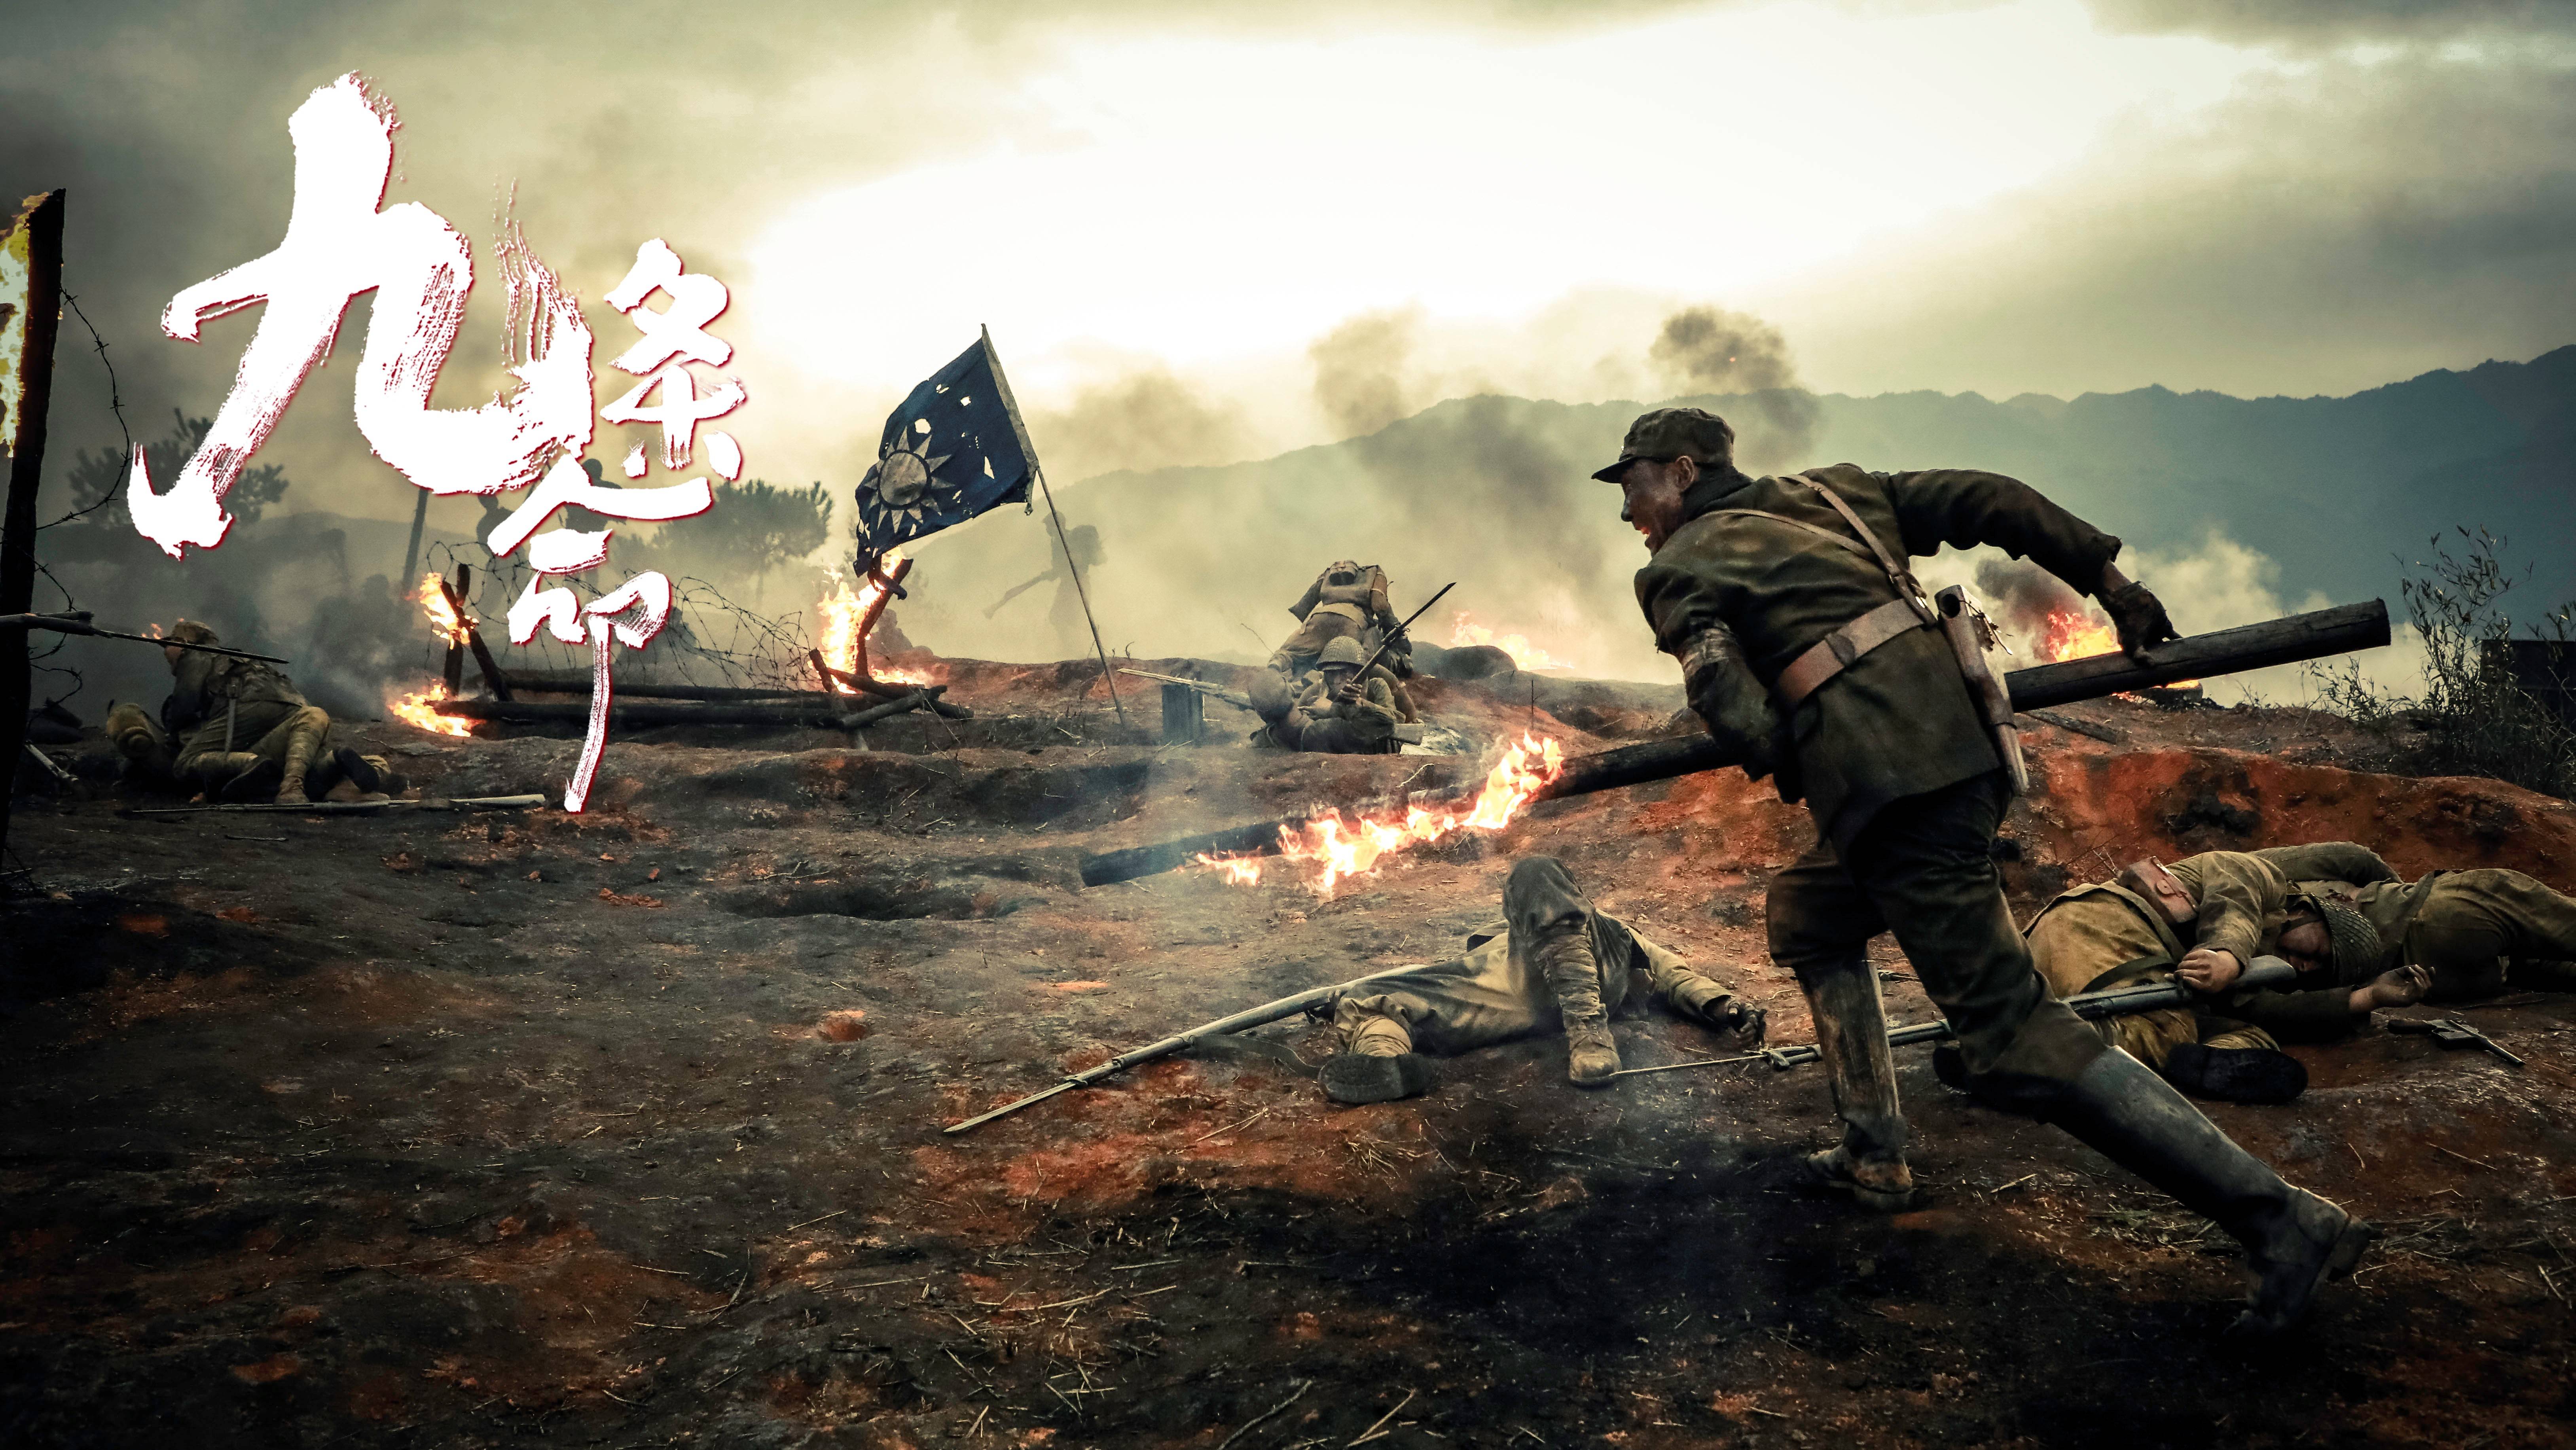 川军抗战电影《九条命》发布新海报!哪些瞬间让你泪目?